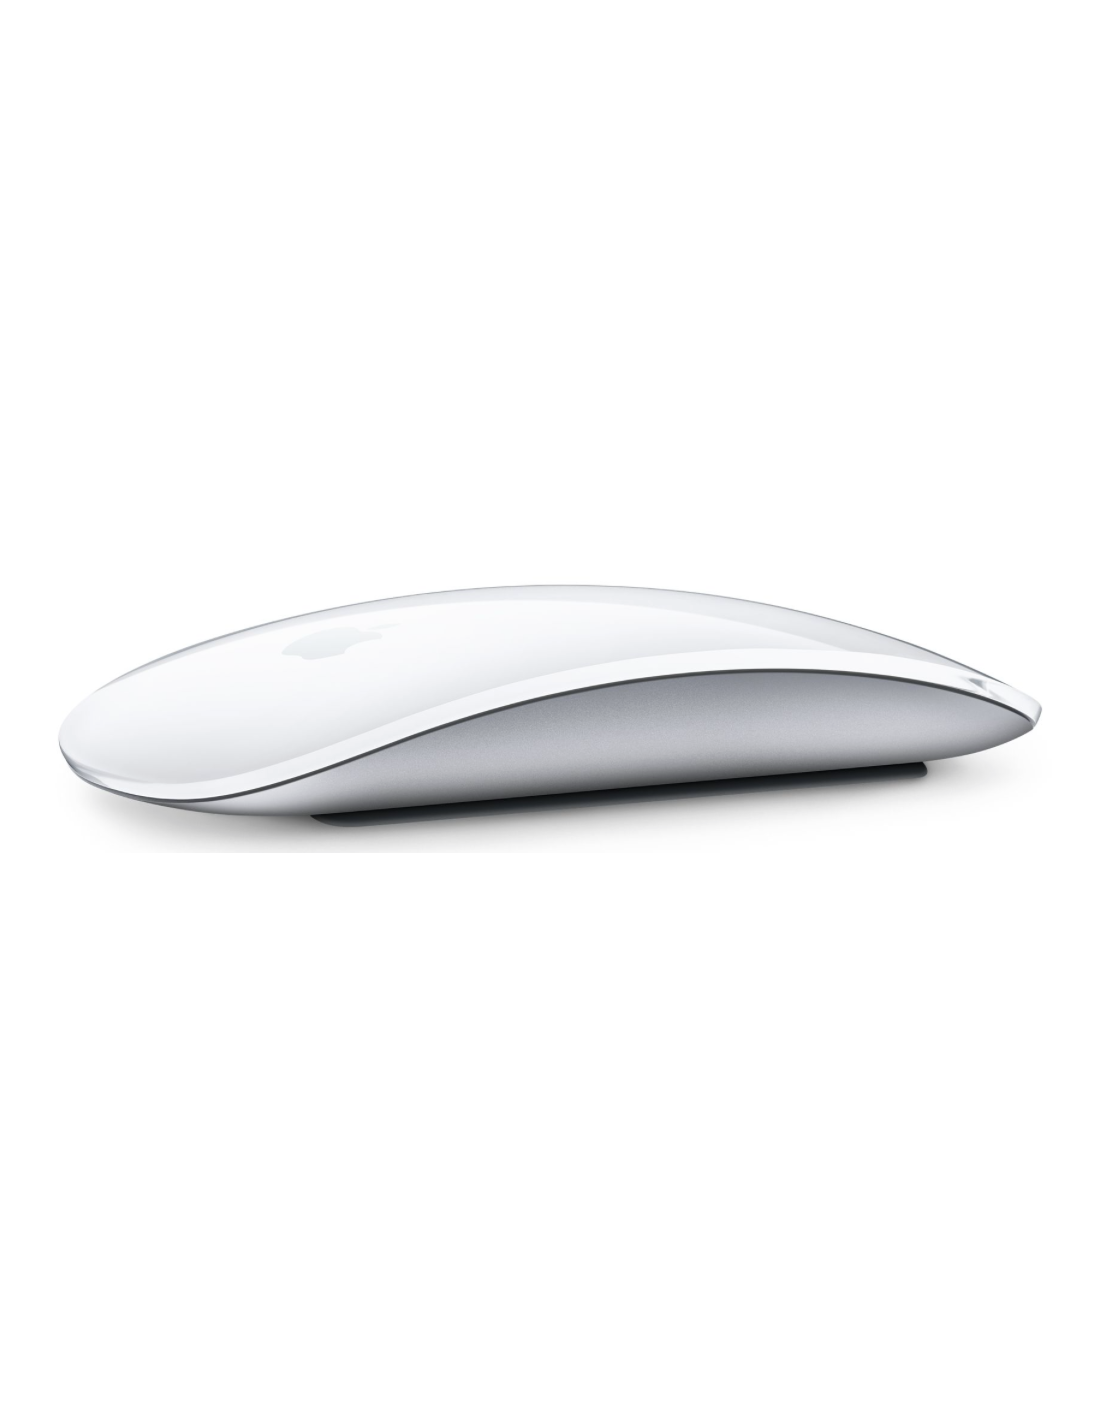 Apple Ratón Magic Mouse: recargable, con conexión Bluetooth y